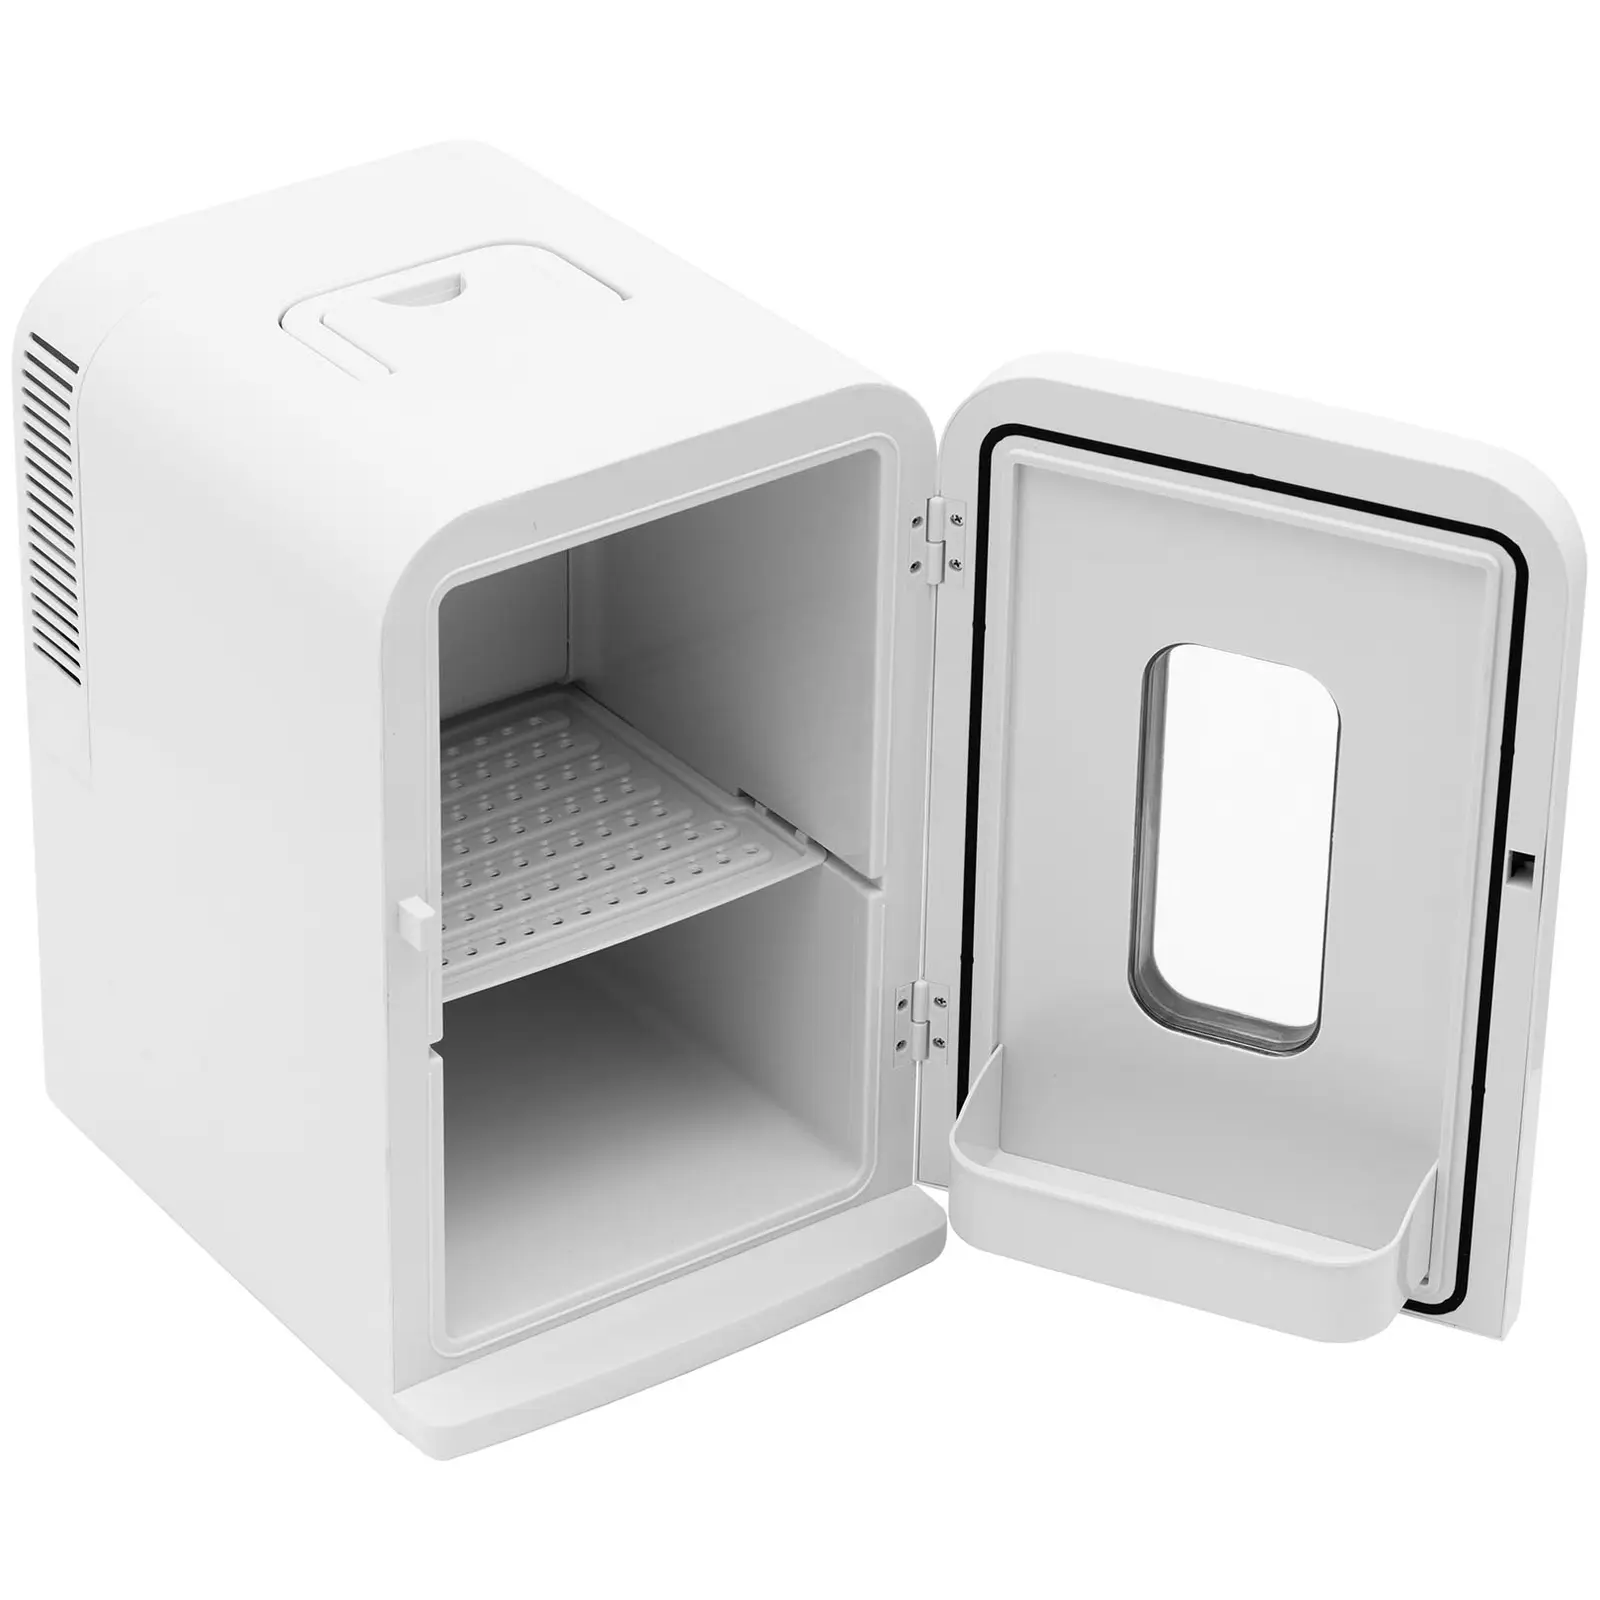 Mini refrigerador 12 V / 230 V - aparato 2 en 1 con función de mantenimiento de calor - 15 L - blanco